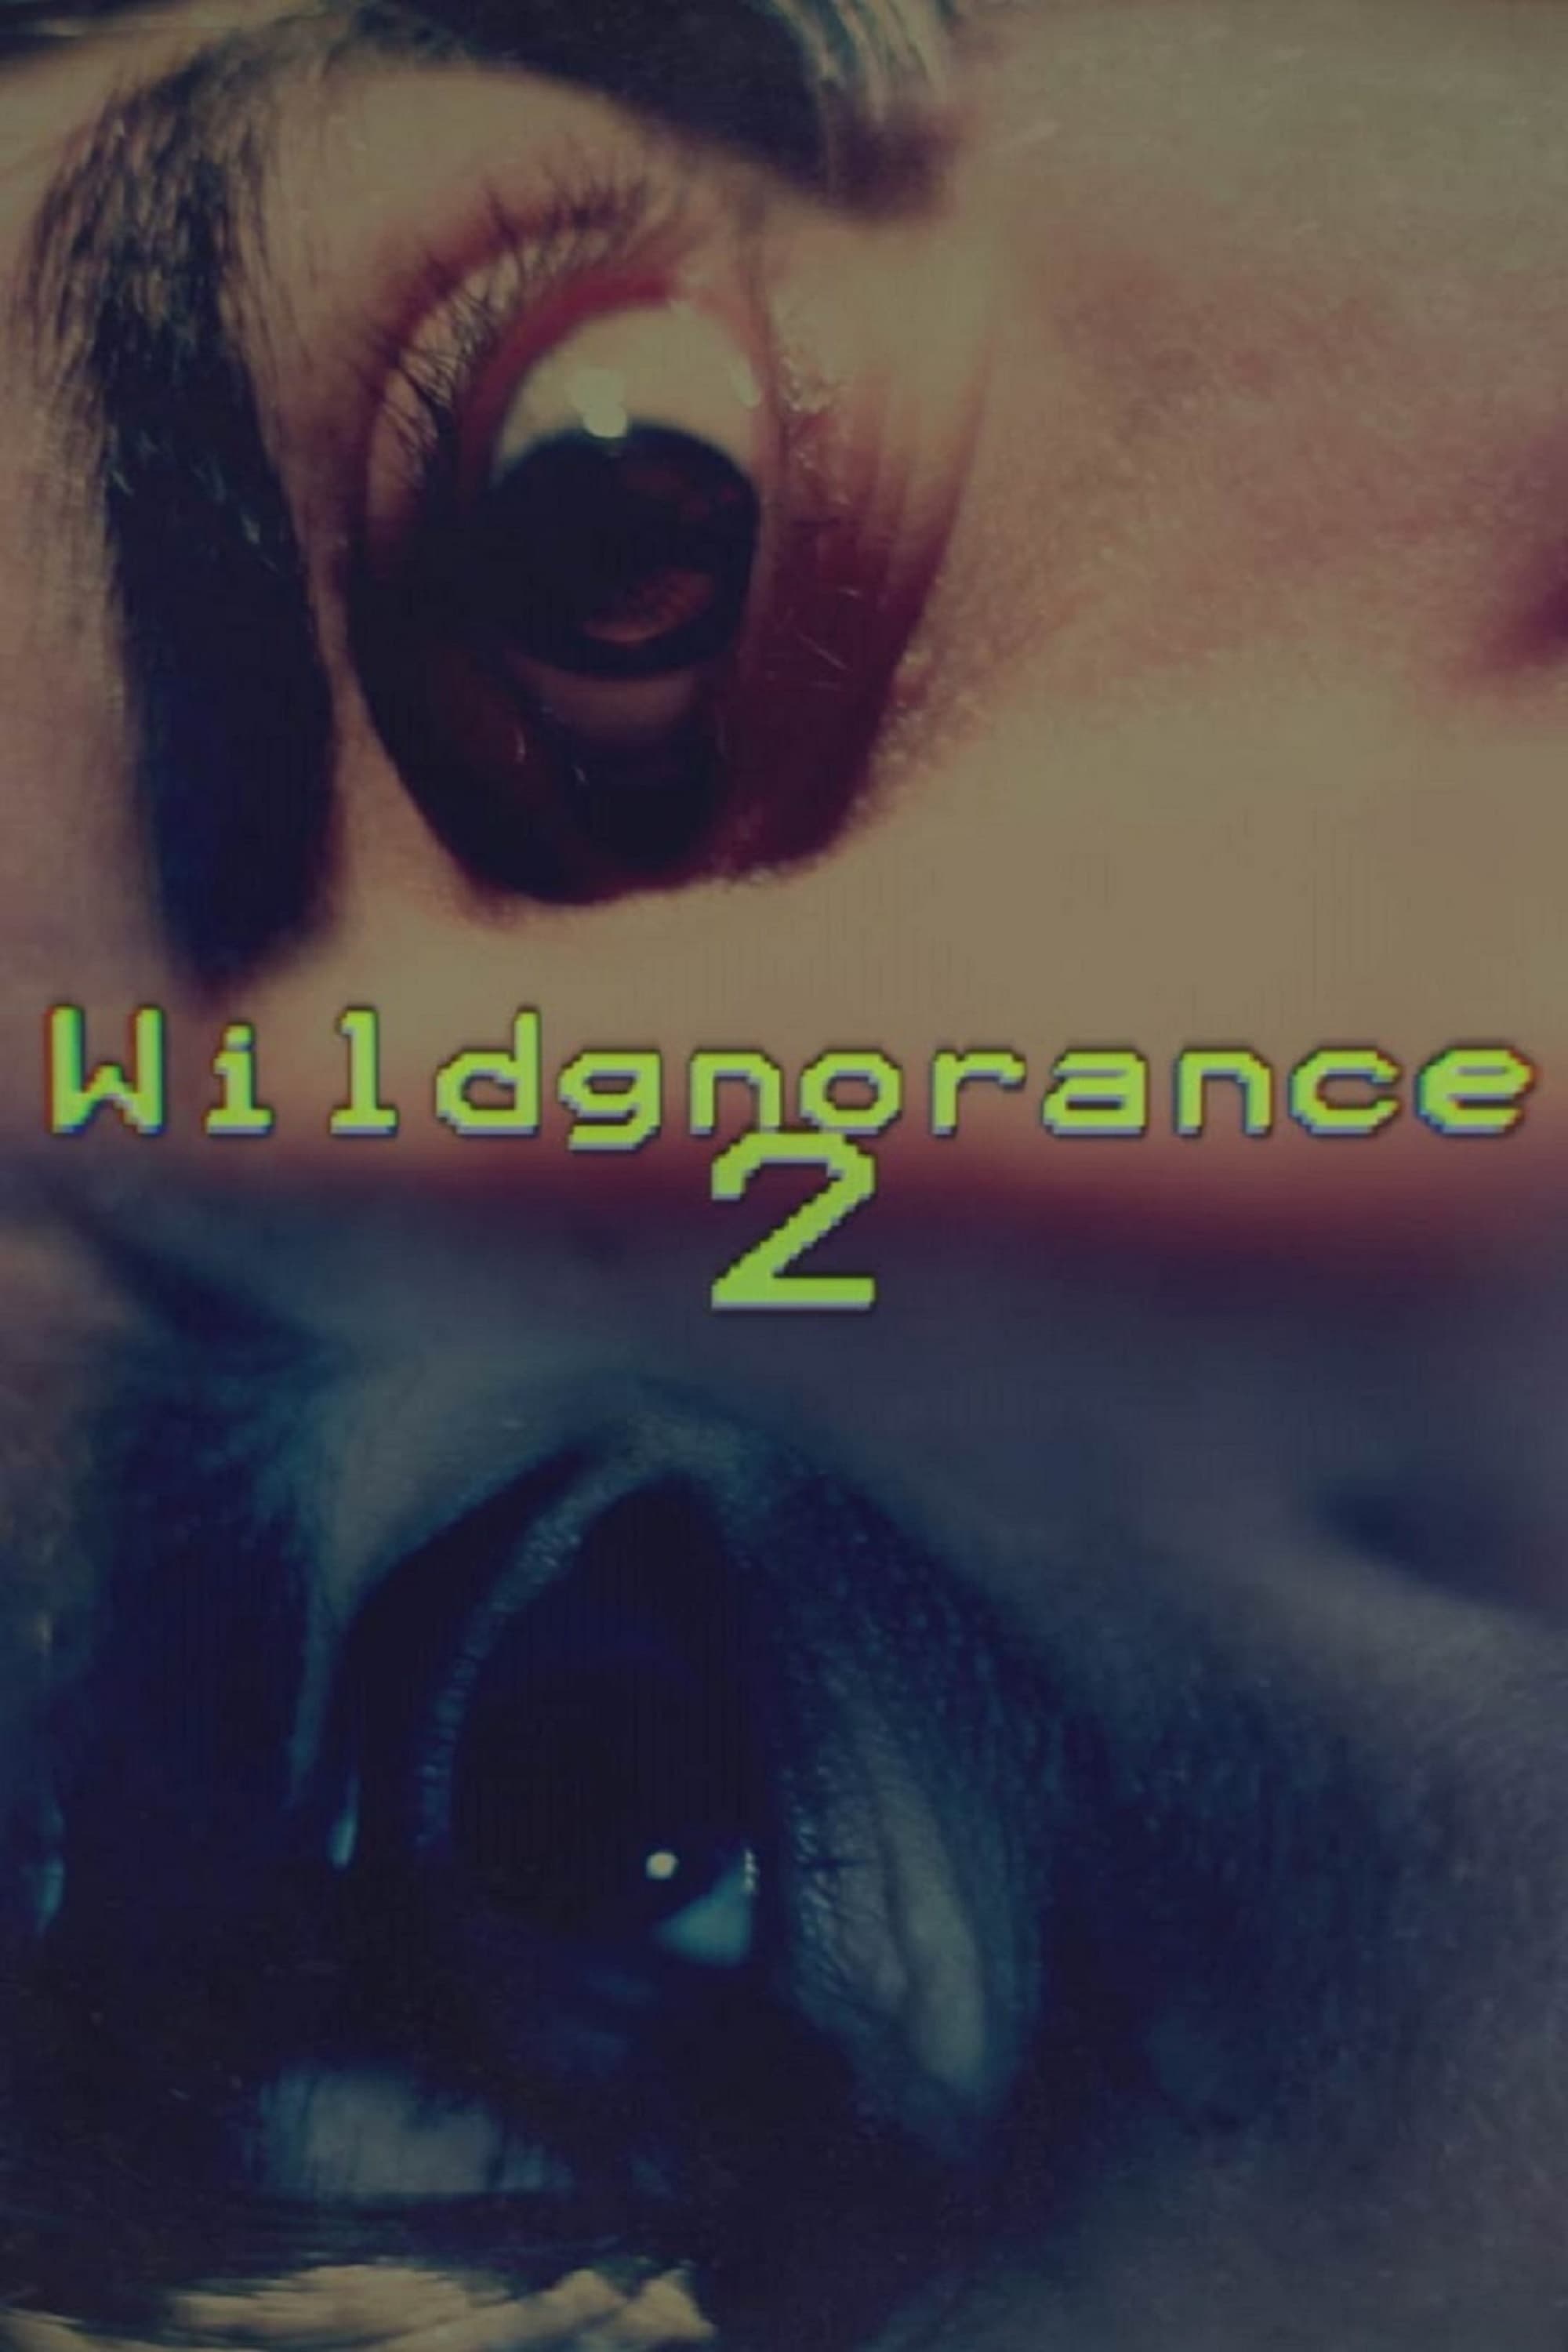 Wildgnorance 2: Time Paradox